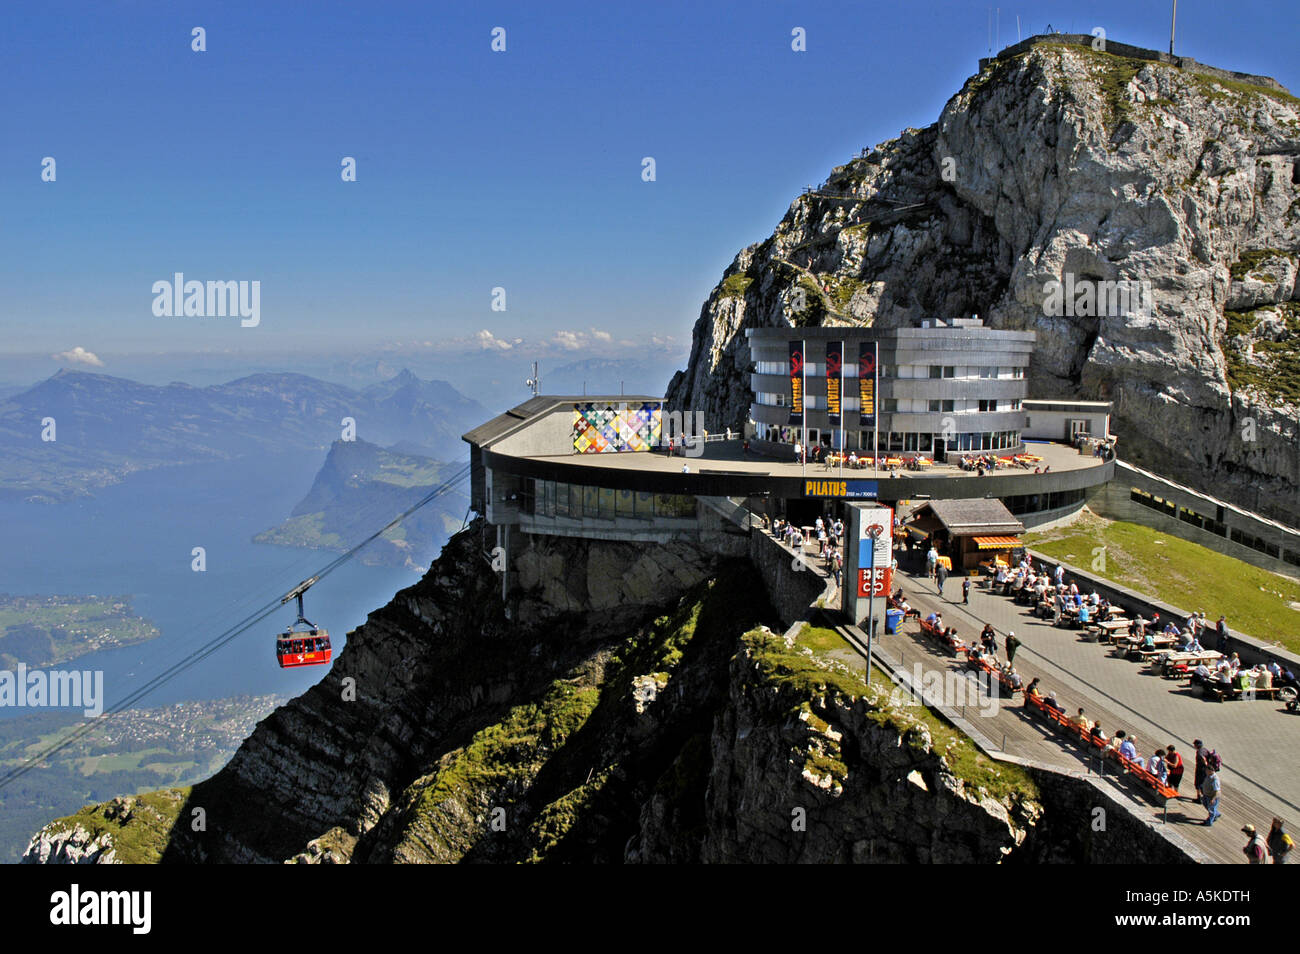 Lucerne Switzerland aerial gondola  railway station on Mount Pilatus Stock Photo